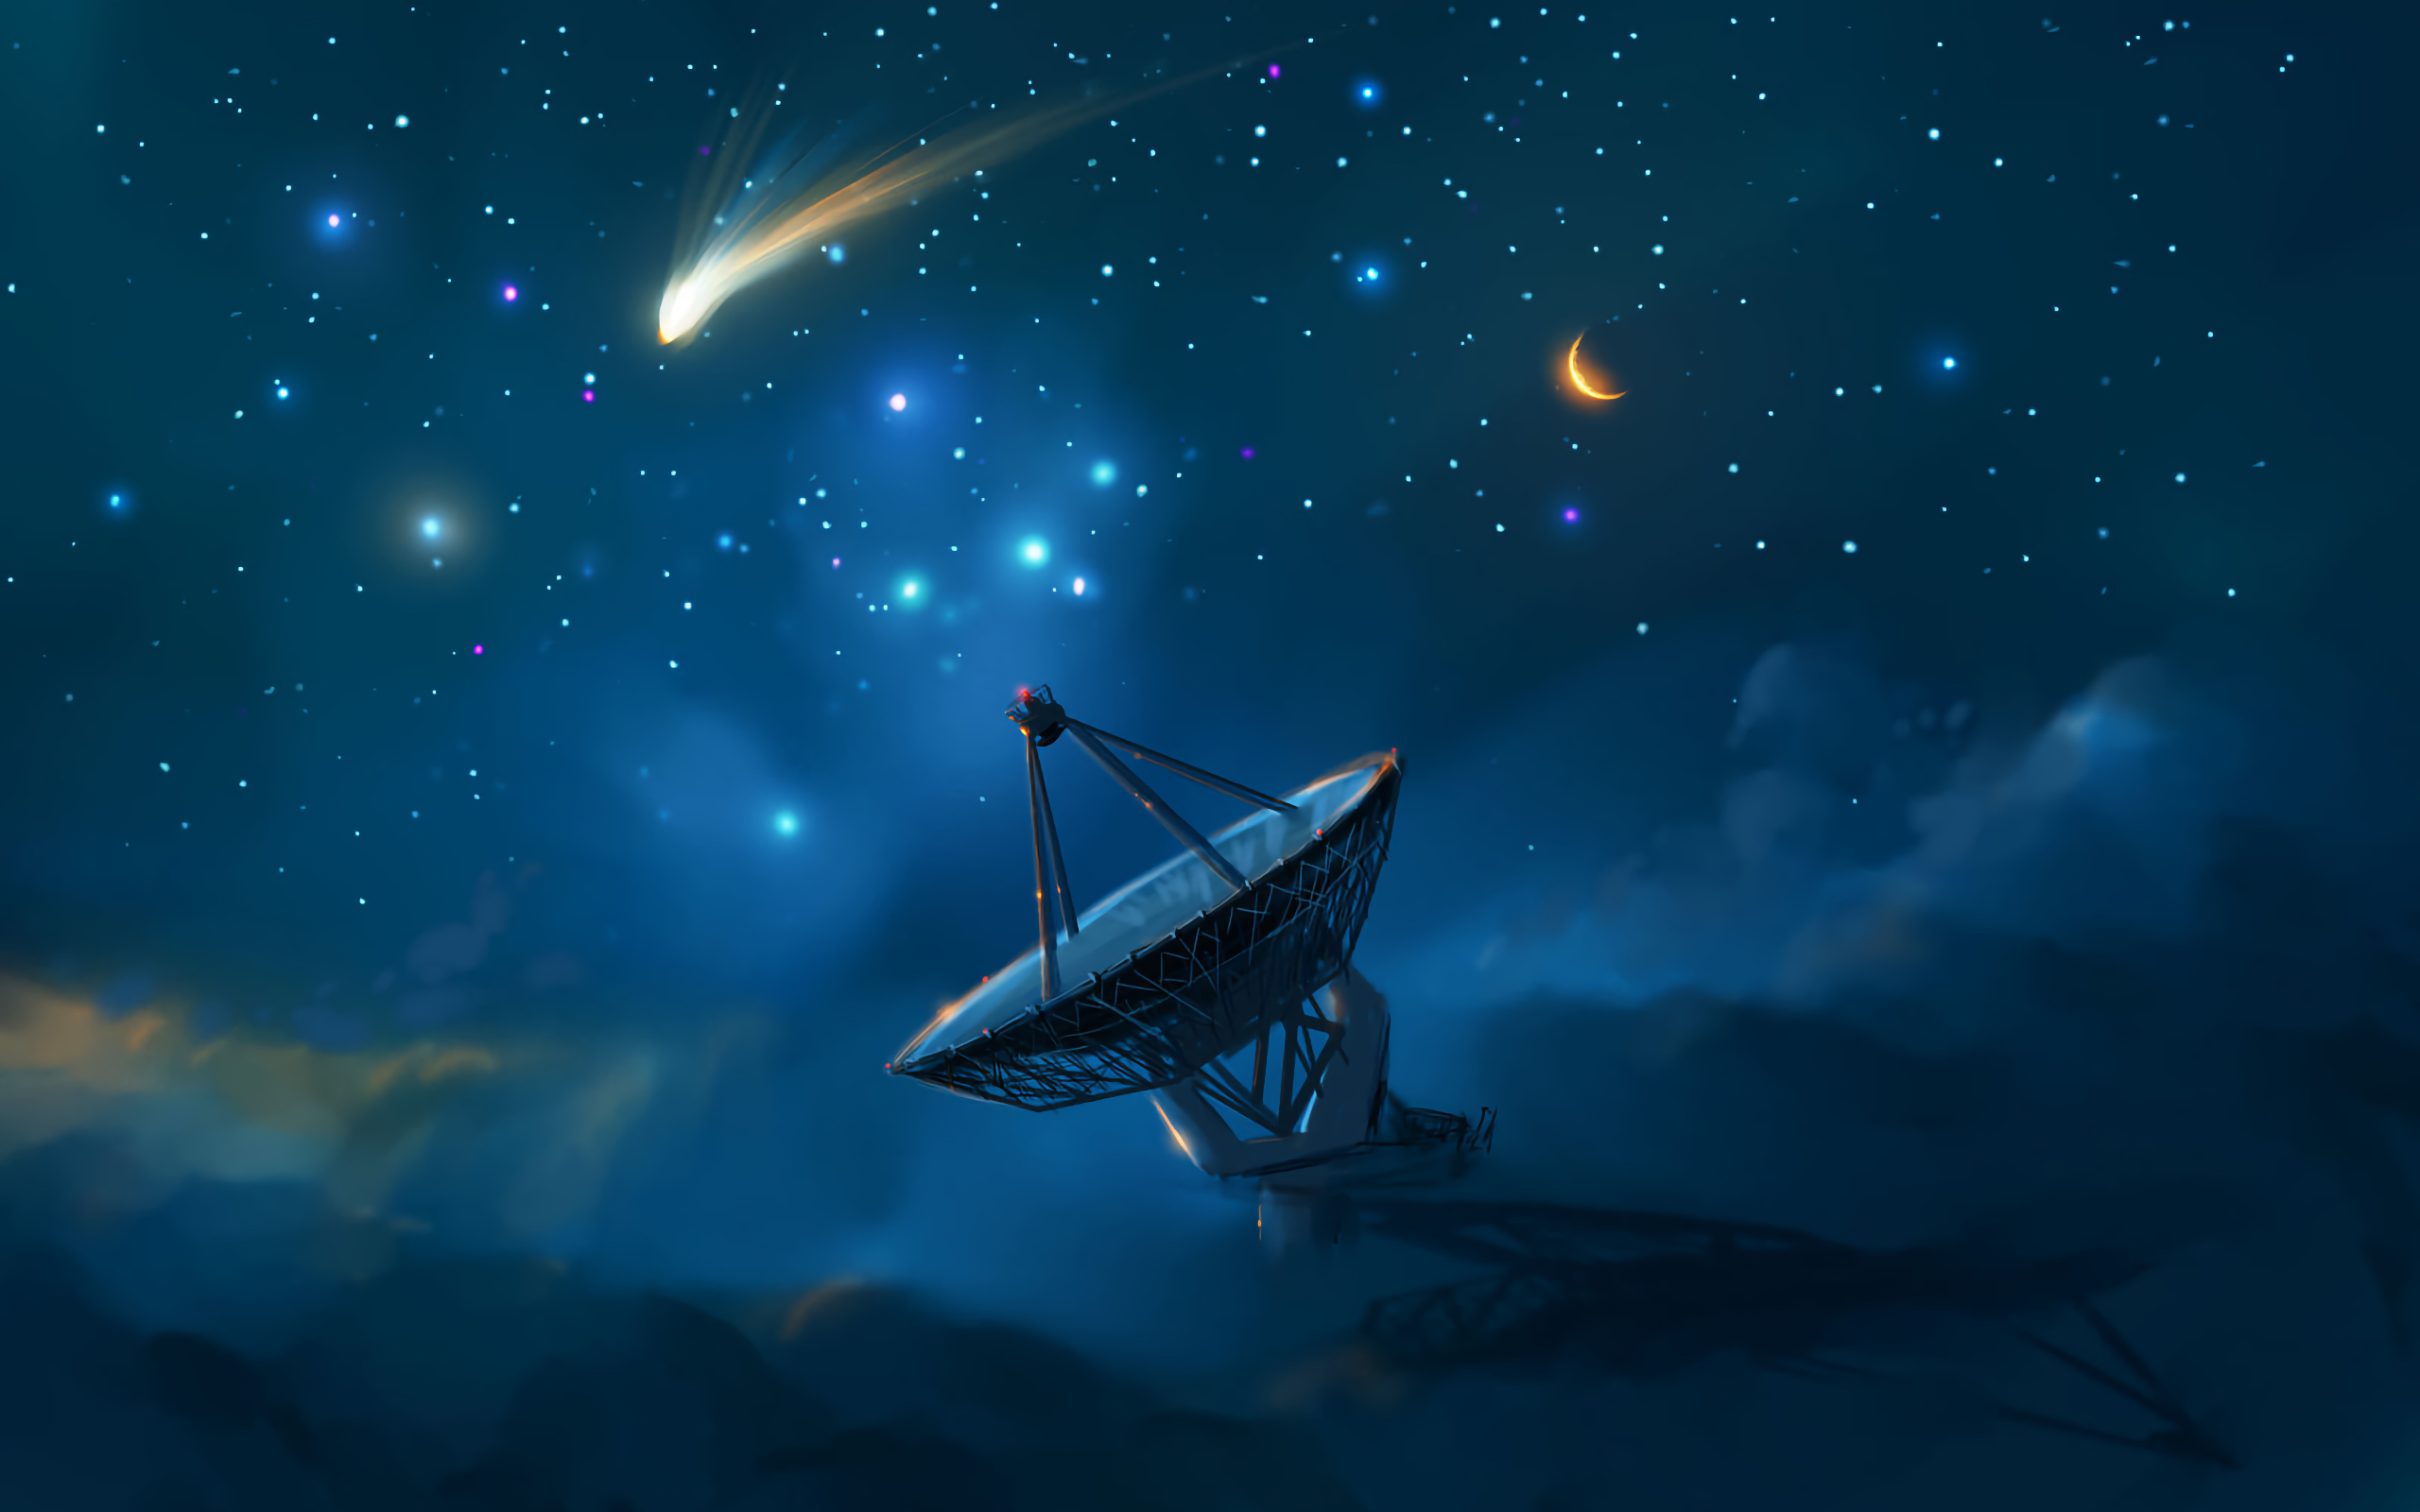 General 2560x1600 night sky night starry night satellite dish stars clouds galaxy Moon digital art comet